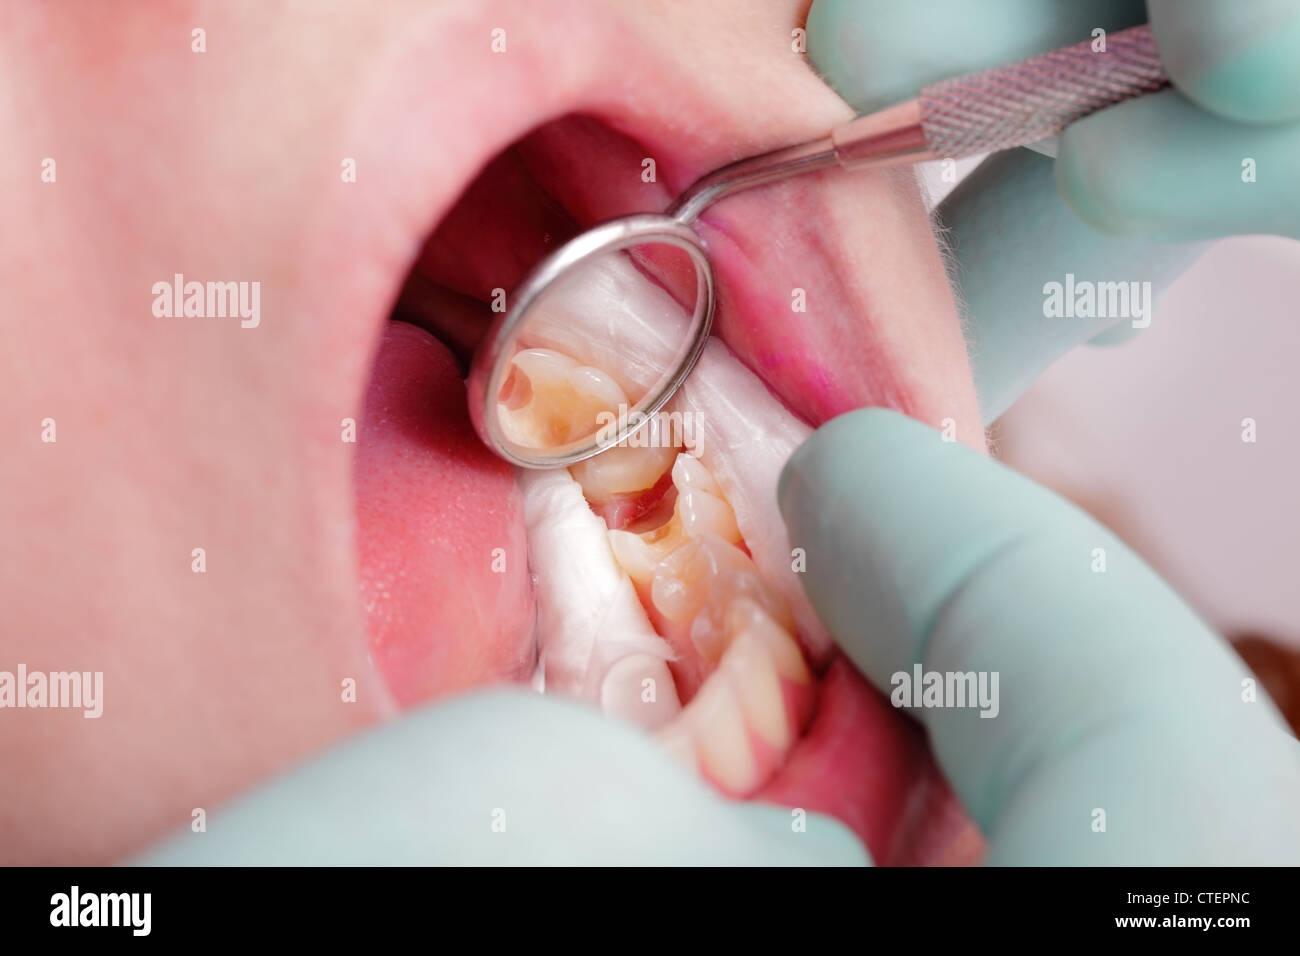 Nahaufnahme von Loch im Zahn nach dem Bohren mit dental Rollen und Spiegel  Stockfotografie - Alamy